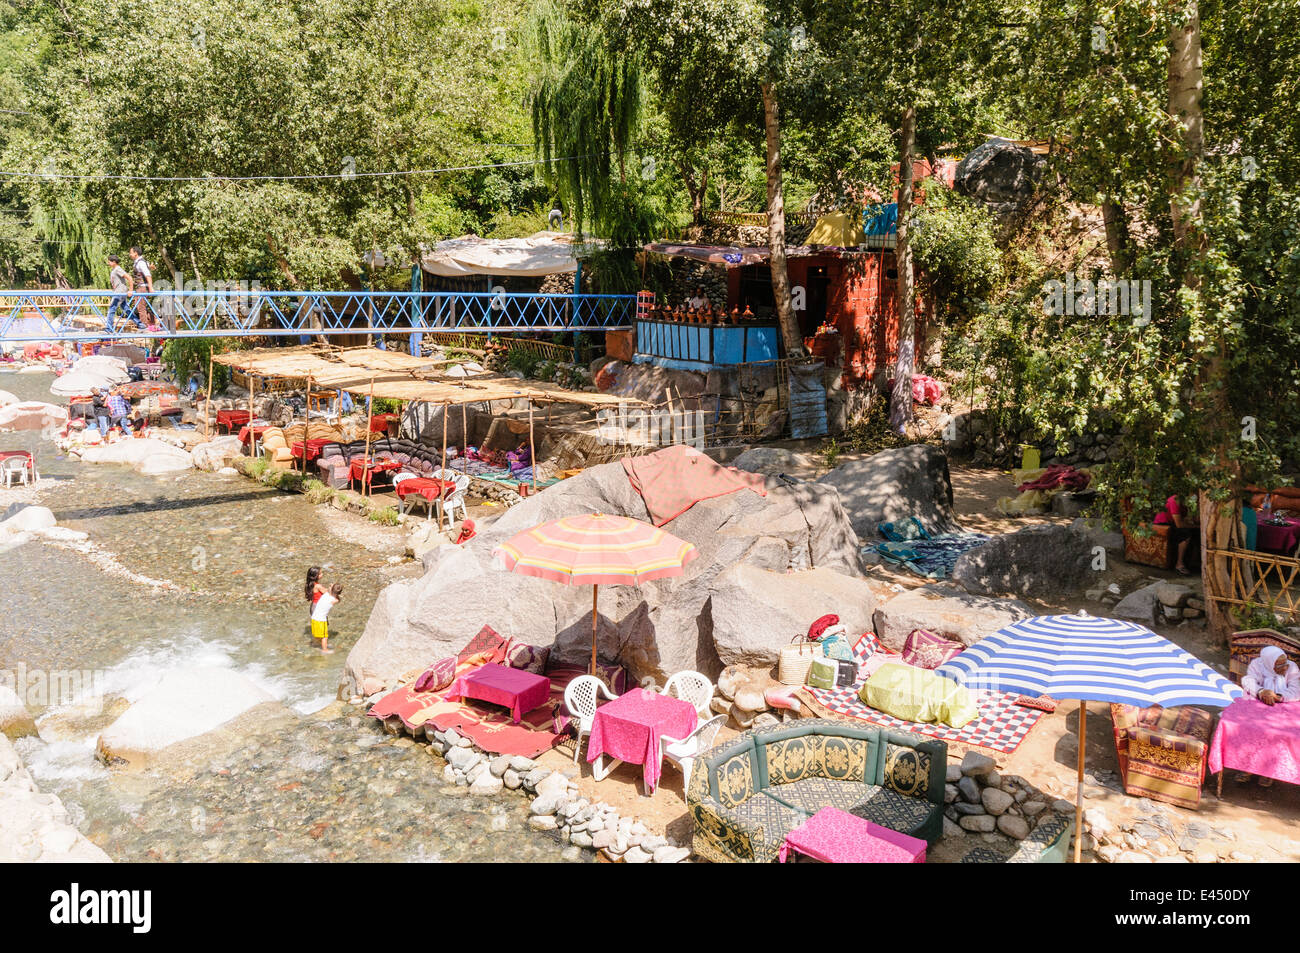 Mesas, sillas de plástico con sombrillas en los restaurantes a orillas del río Ourika, Valle de Ourika, las montañas del Atlas, Marruecos Foto de stock